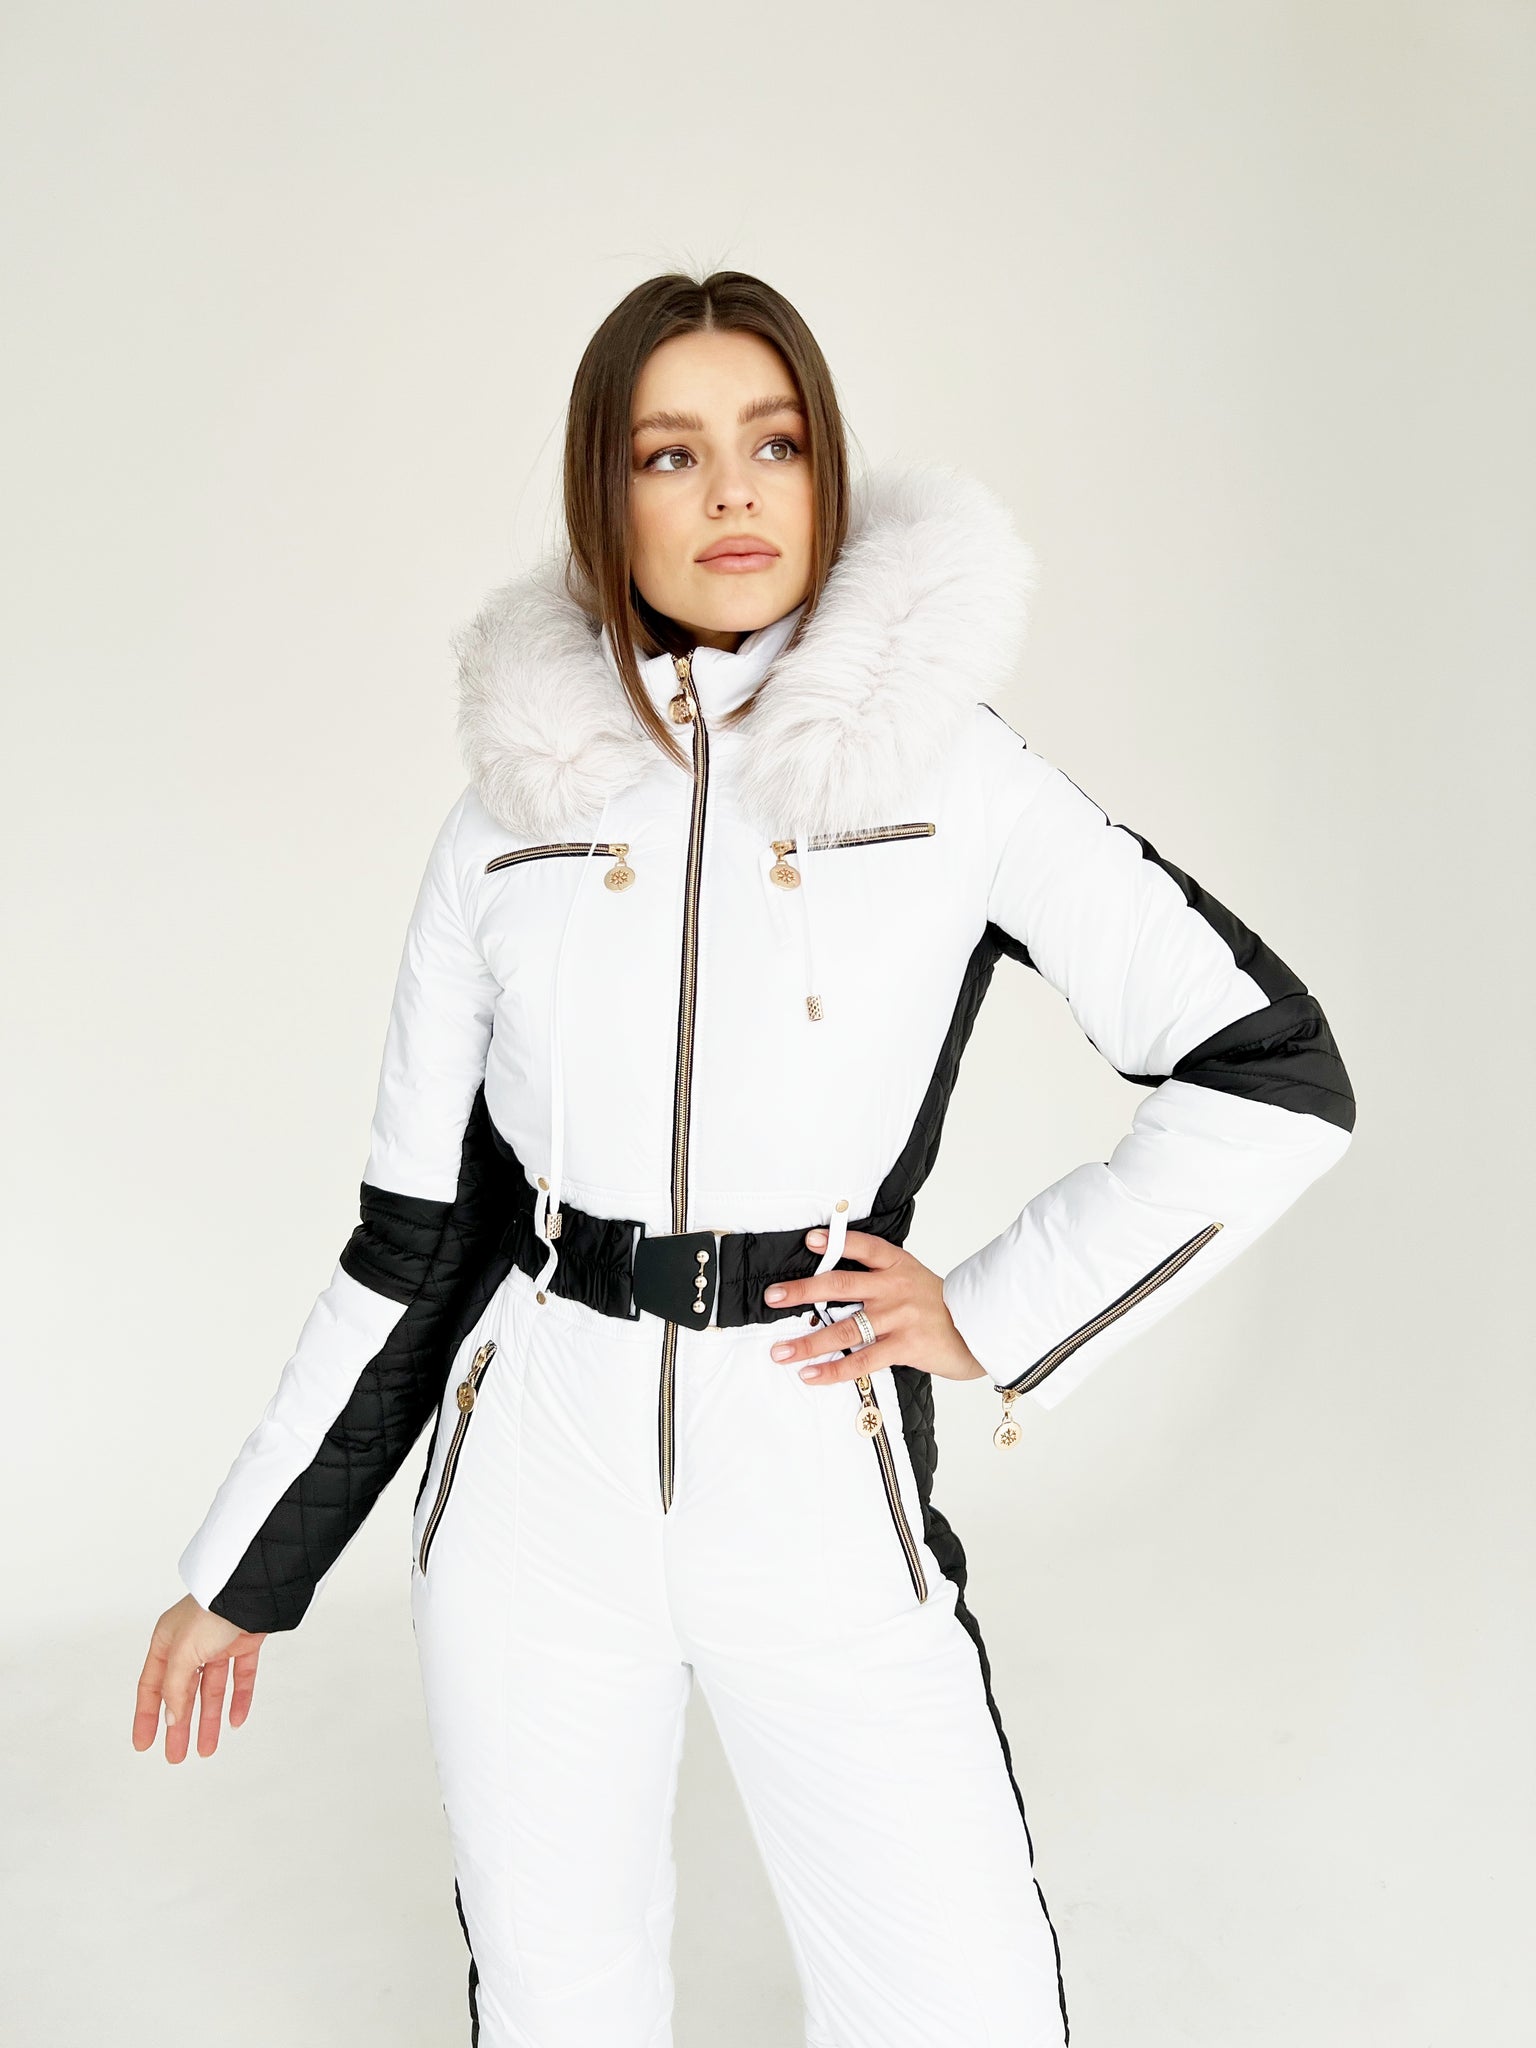 Womens Snowsuit White Womens Ski Suit Black Womens Ski Suit 